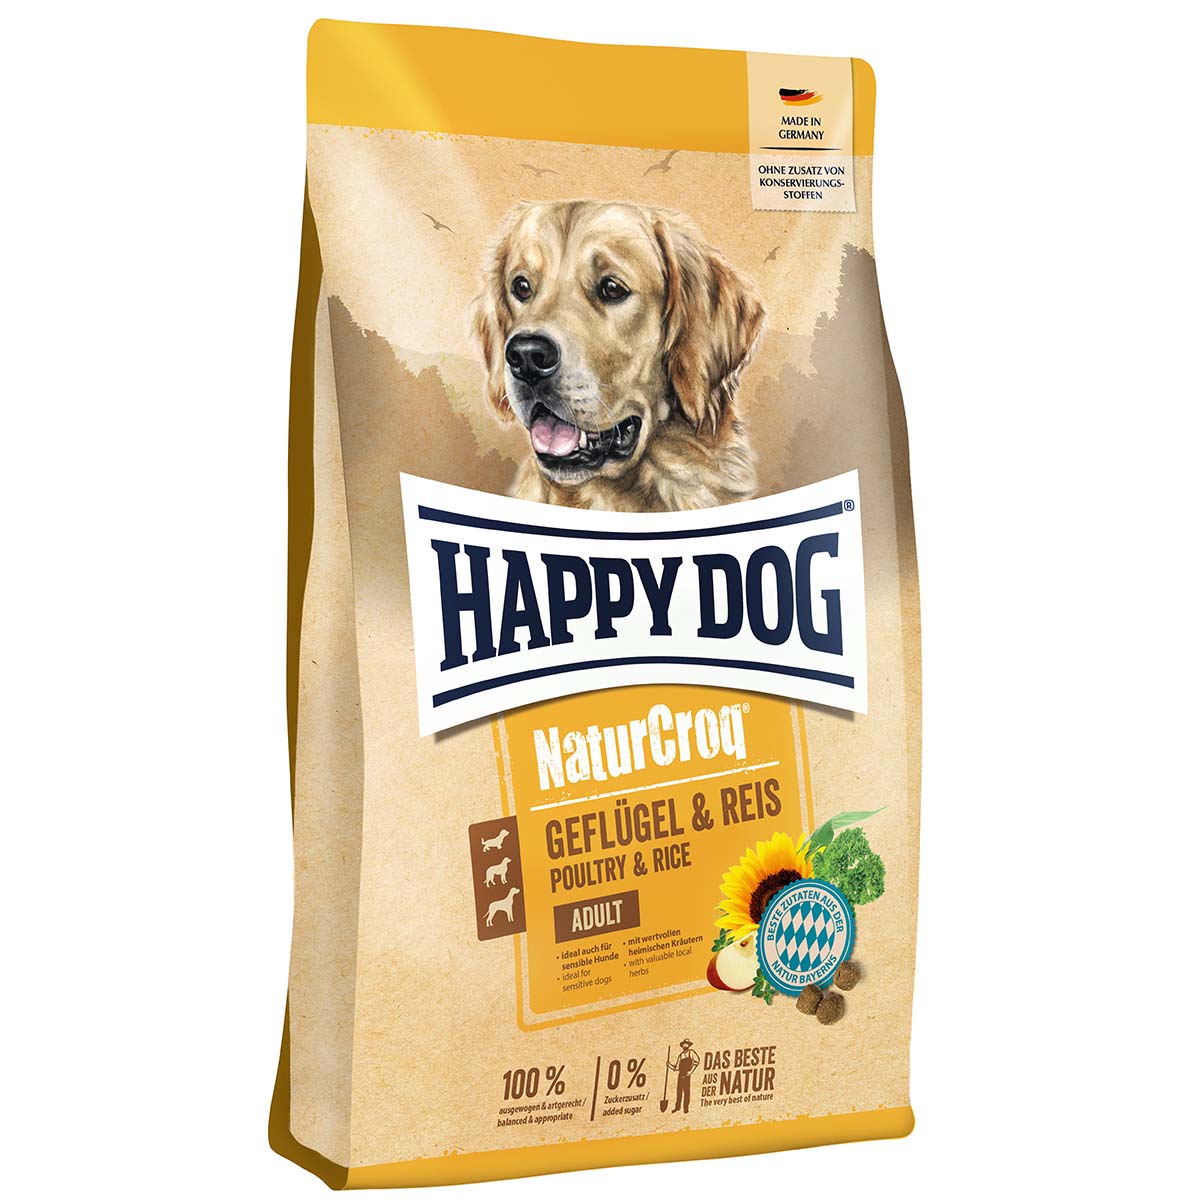 Happy Dog NaturCroq čisté drůbeží maso a rýže 3x4kg